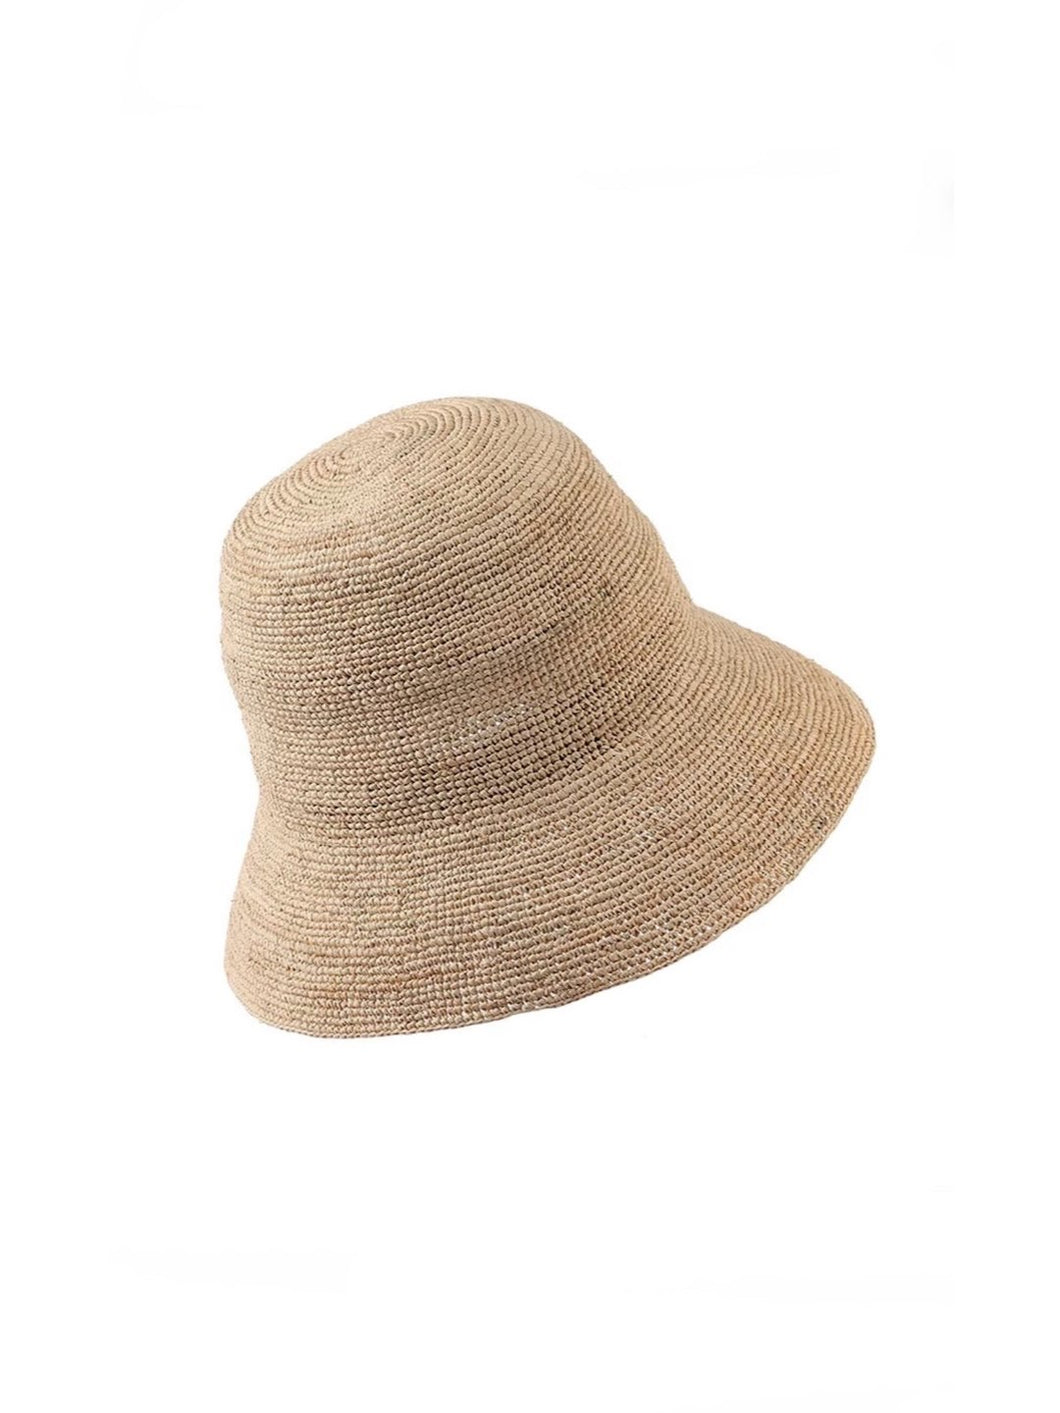 Raffia adult hat